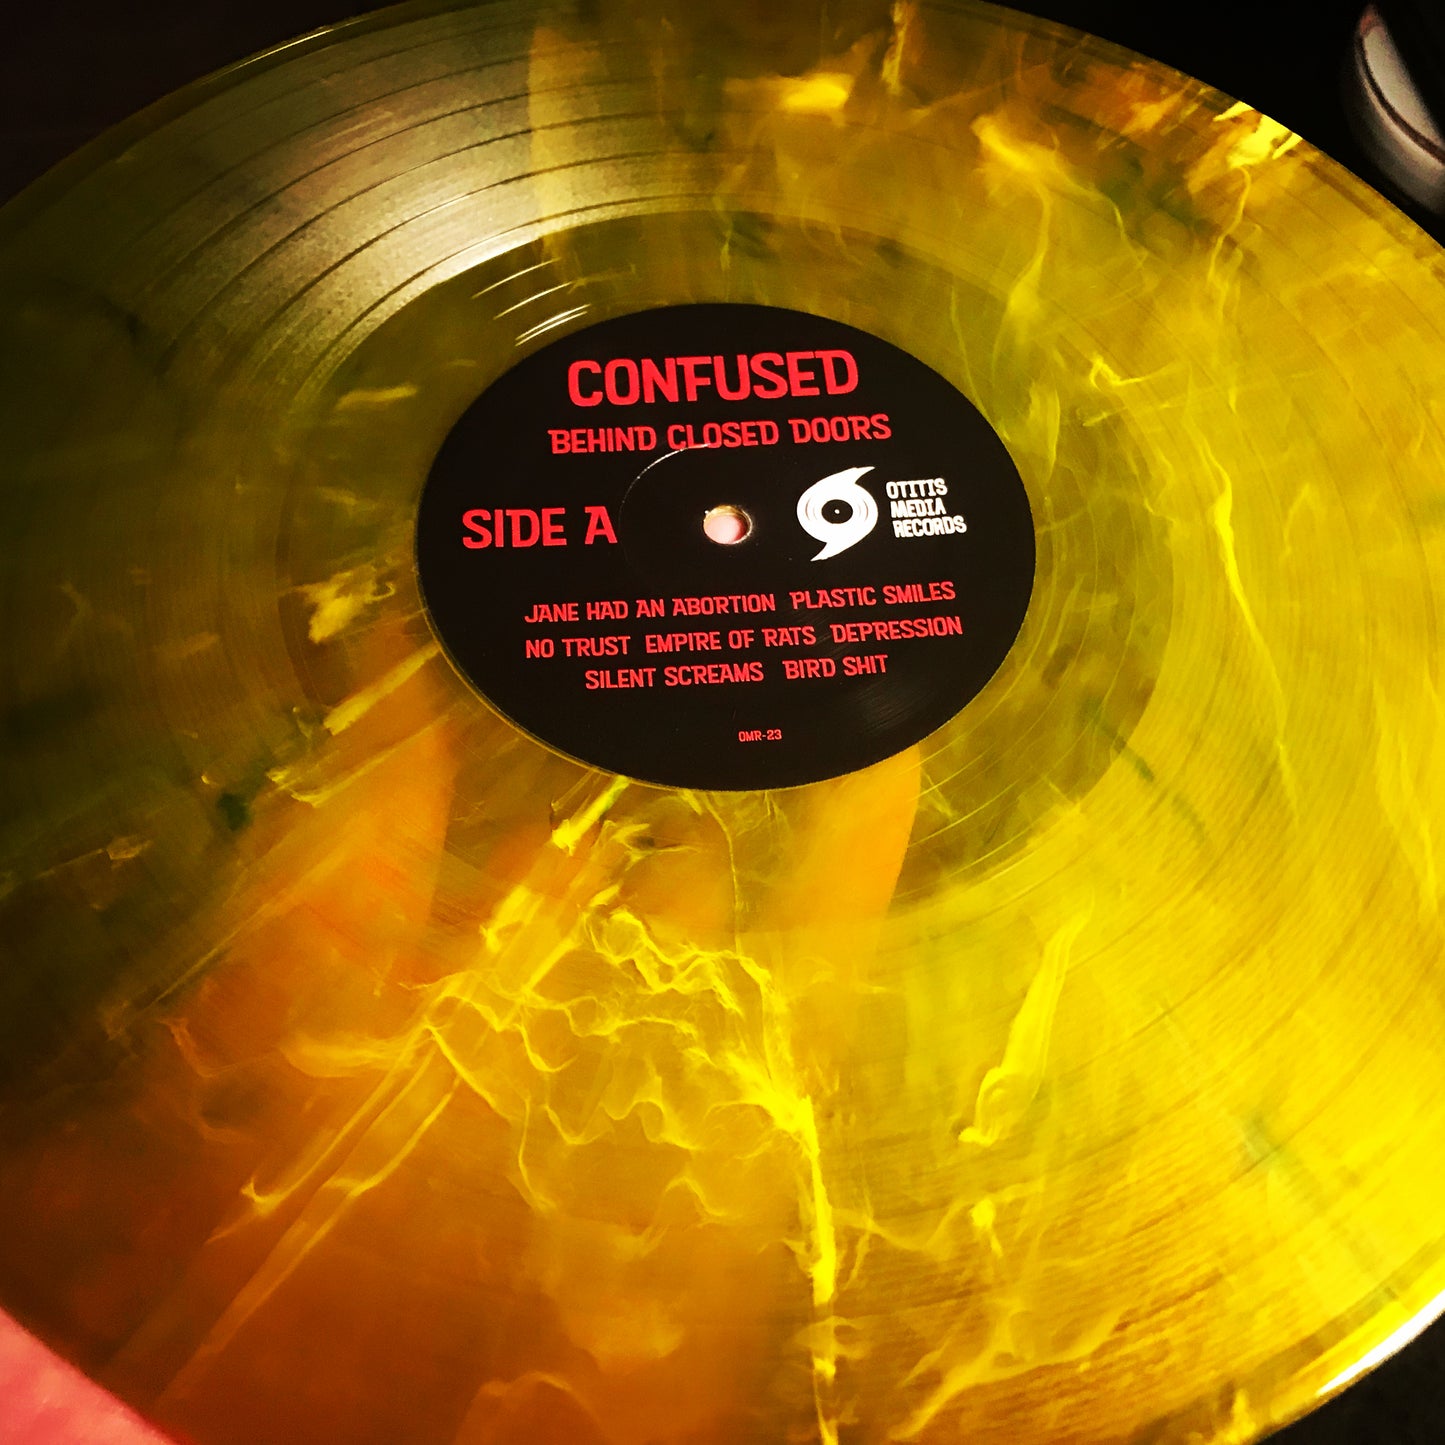 OMR-023 CONFUSED “Behind Closed Doors” 12 inch Vinyl (Random Colored)